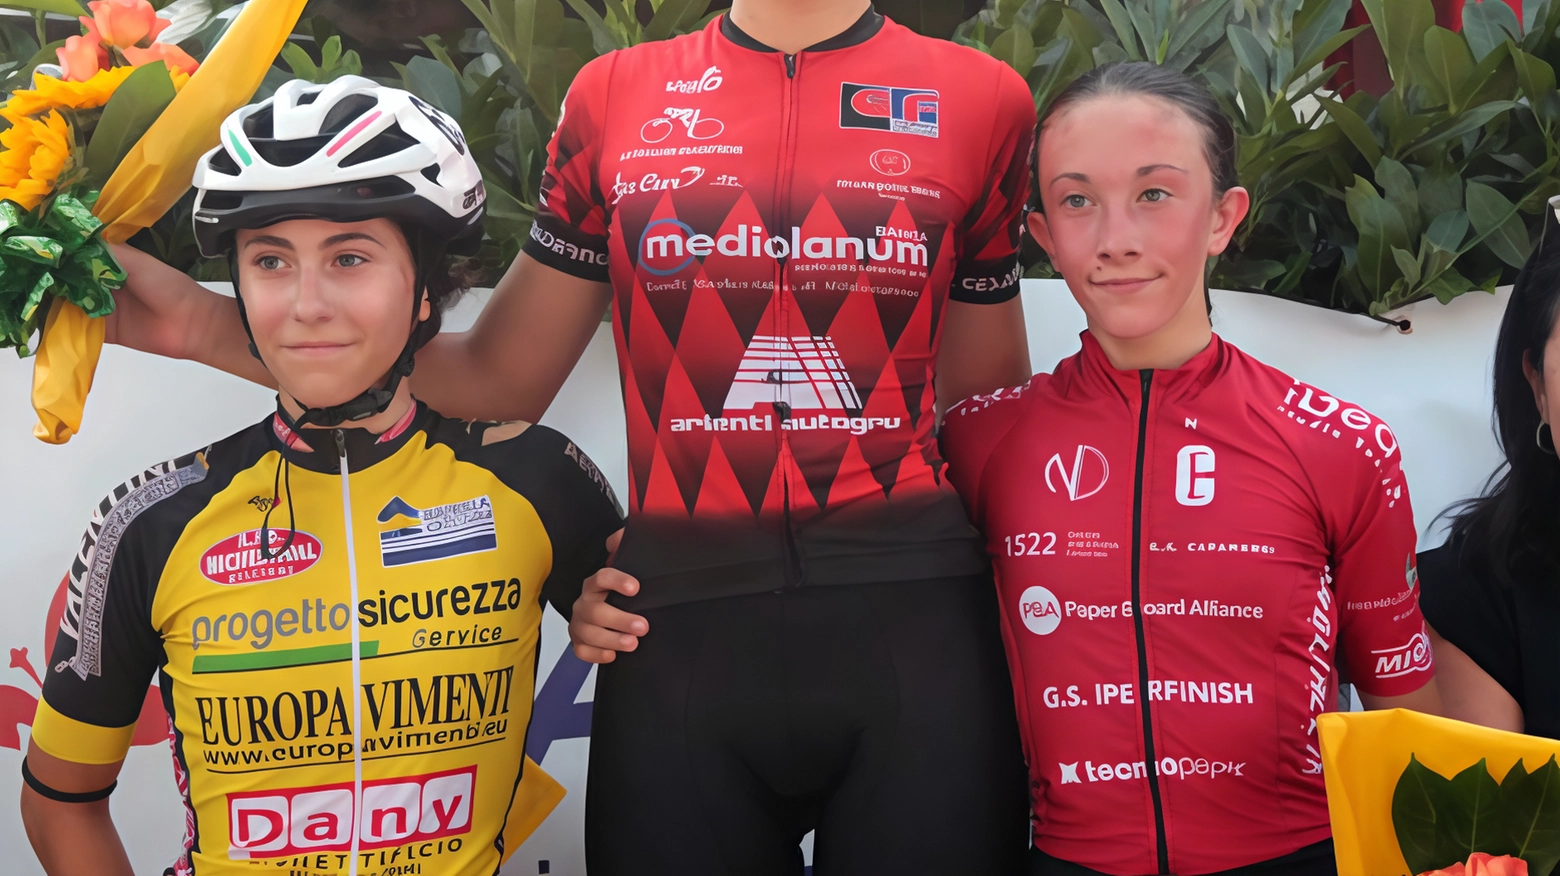 Nicole Bracco trionfa a Vergaio di Prato nella Coppa Italia donne esordienti, consolidando il primato per la Società Ciclistica Cesano Maderno.